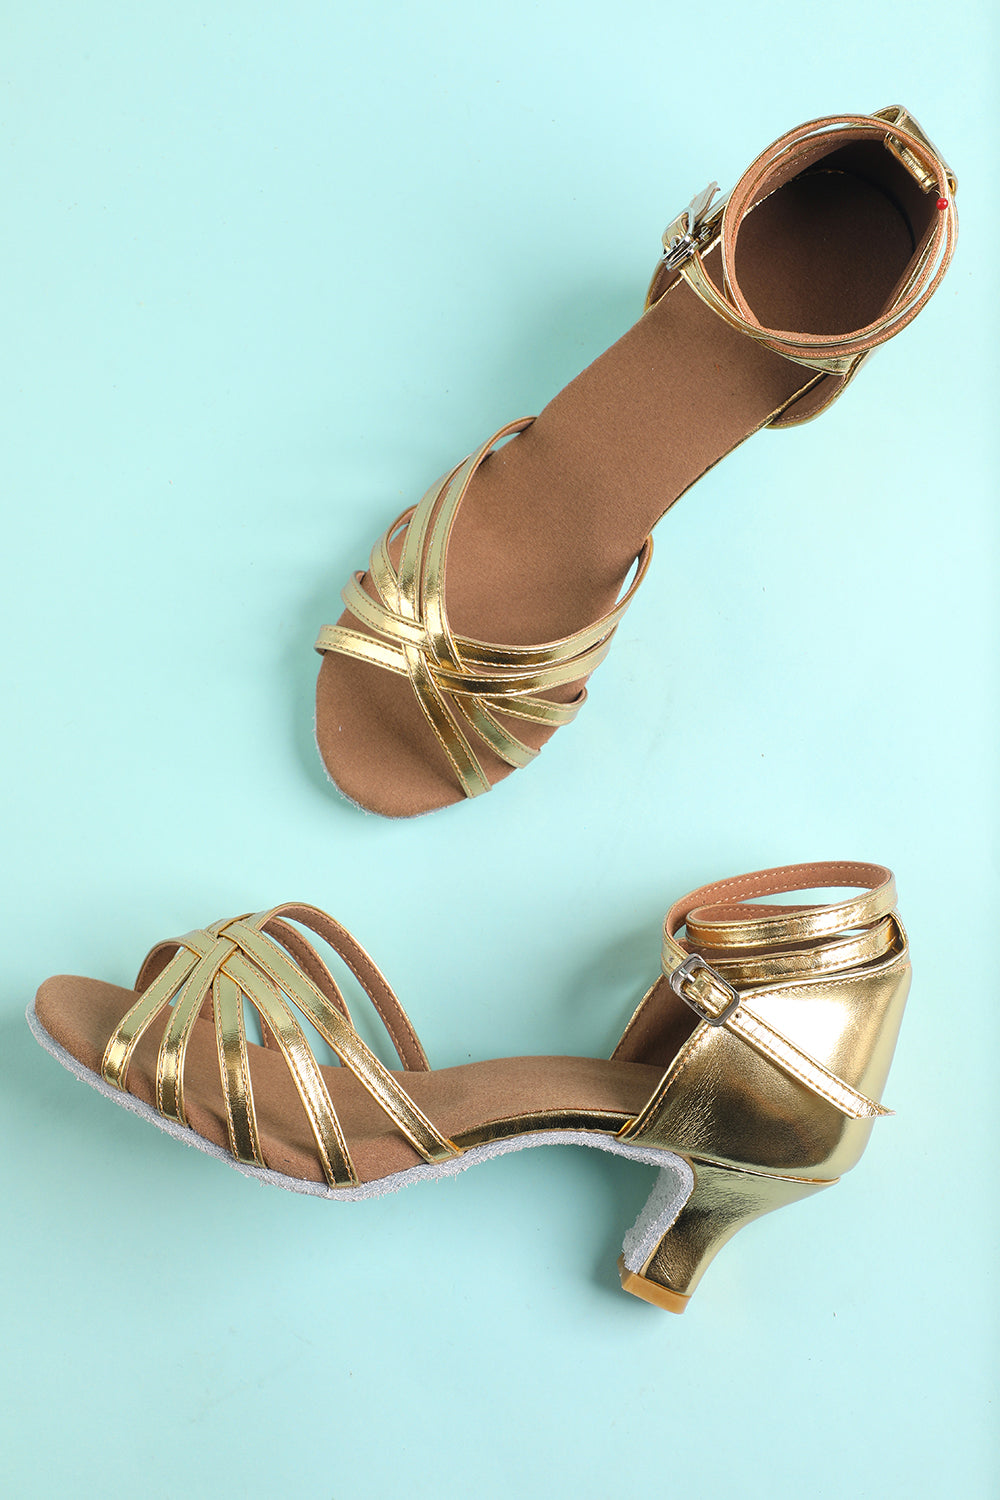 Women's Gold Buckle Low Heel Sandals Dance Shoes Wedding Shoes